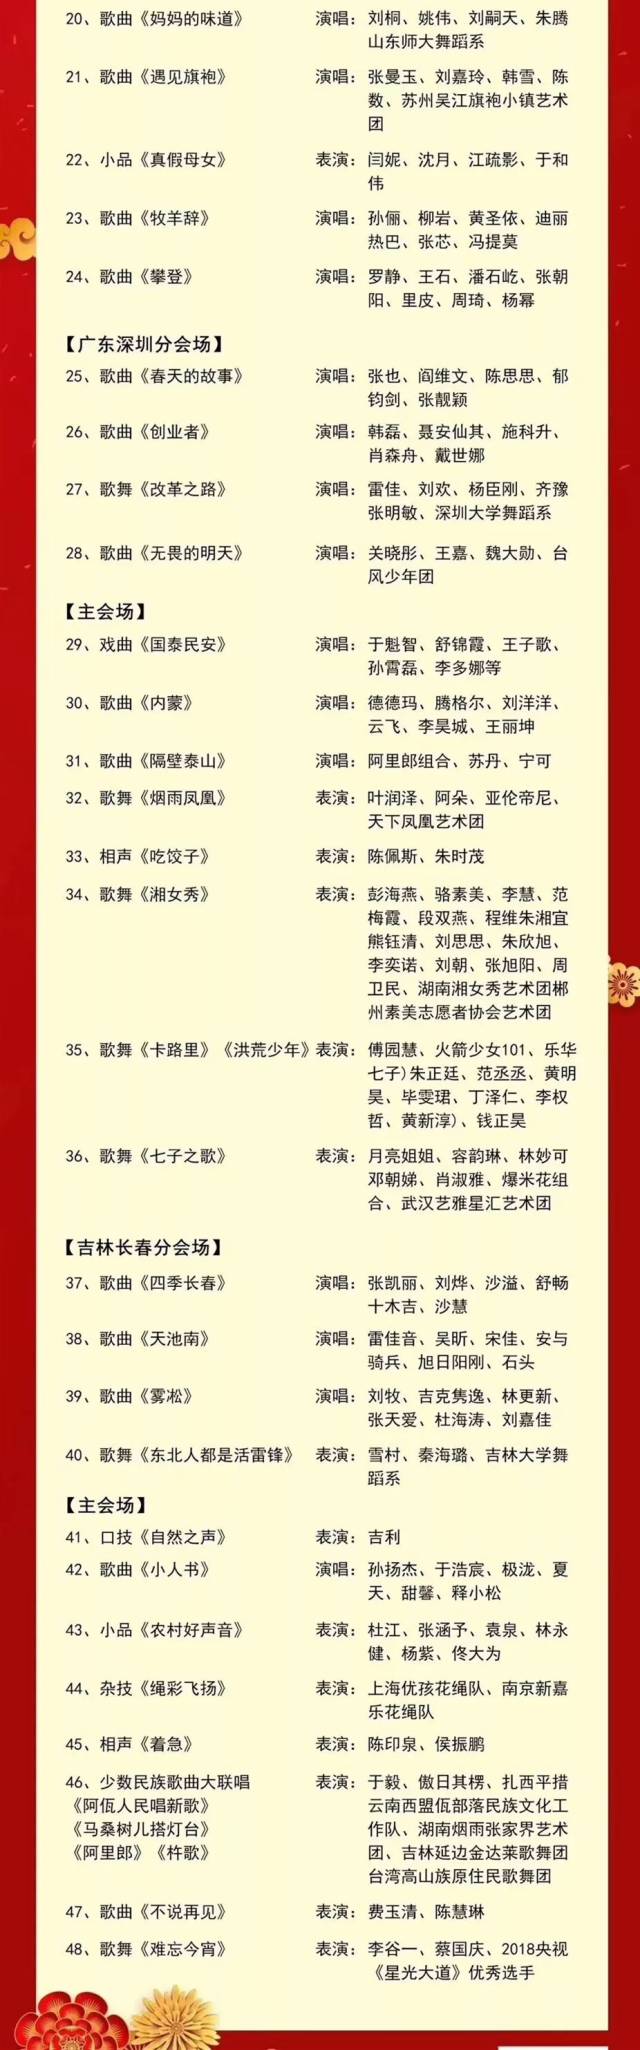 确认的2019春节联欢晚会节目单,著名演员迪丽热巴,成龙齐登场